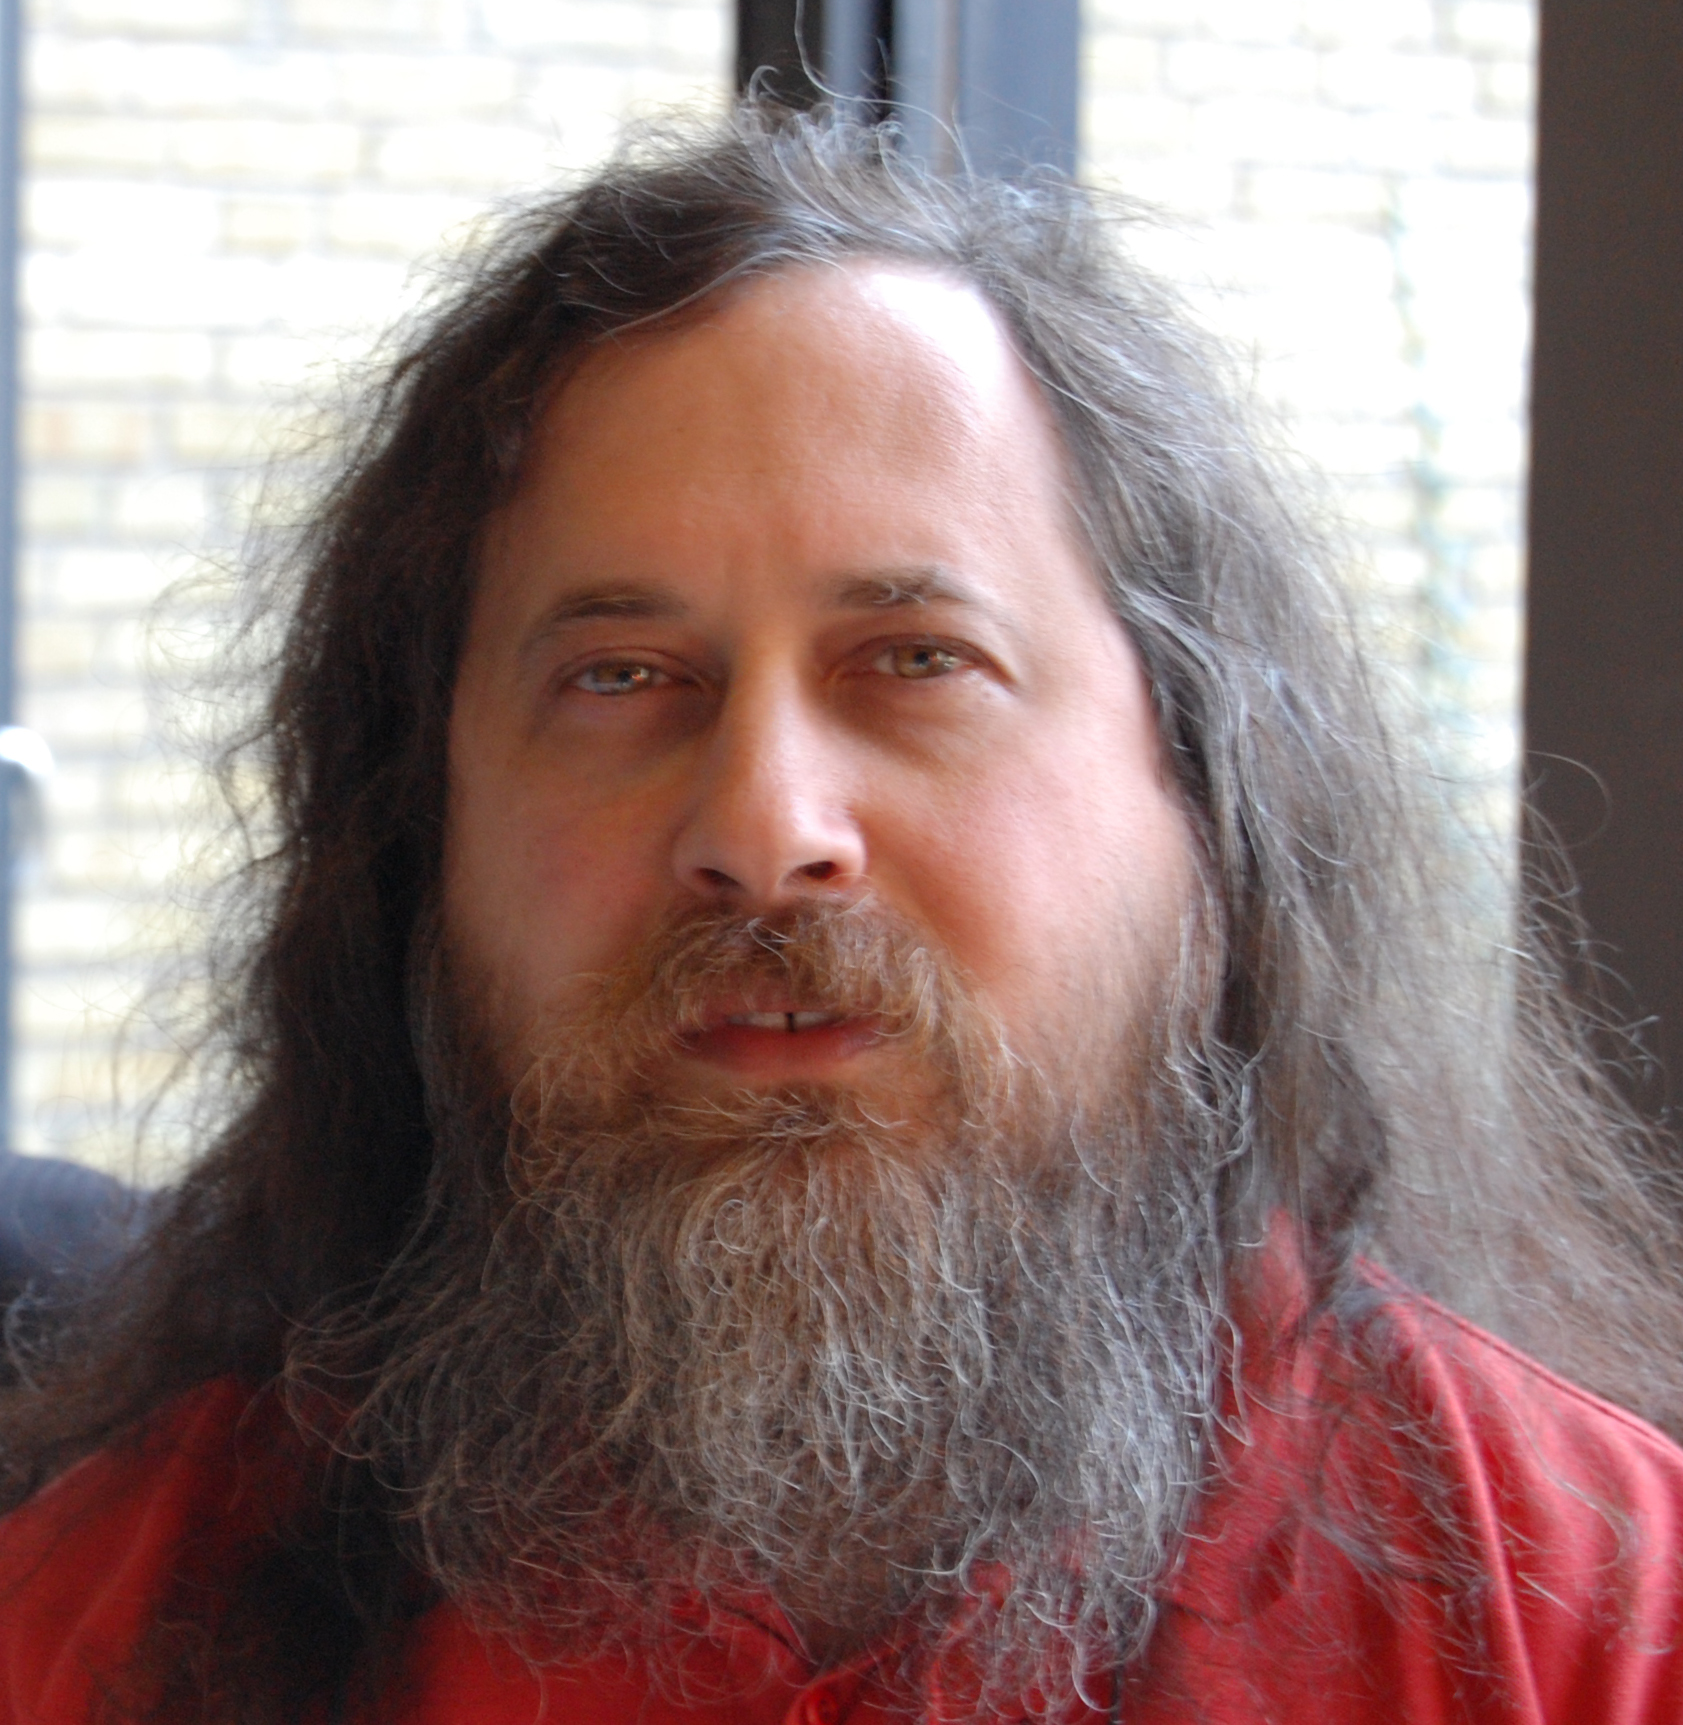 Stallman